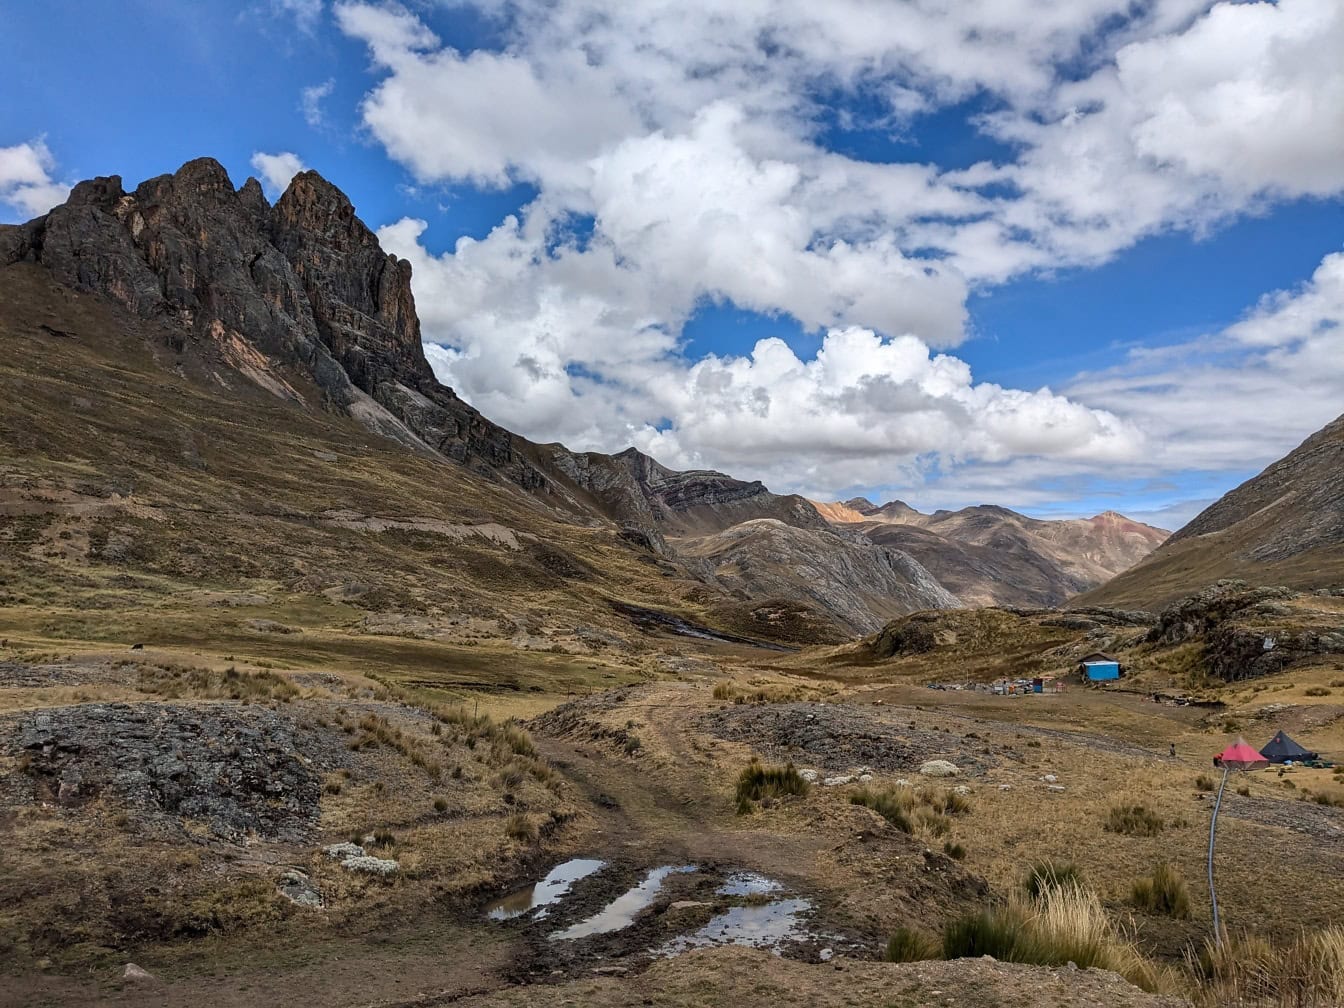 Lanț muntos cu loc de campare într-o vale din lanțul muntos Cordillera Huayhuash din Anzi din Peru